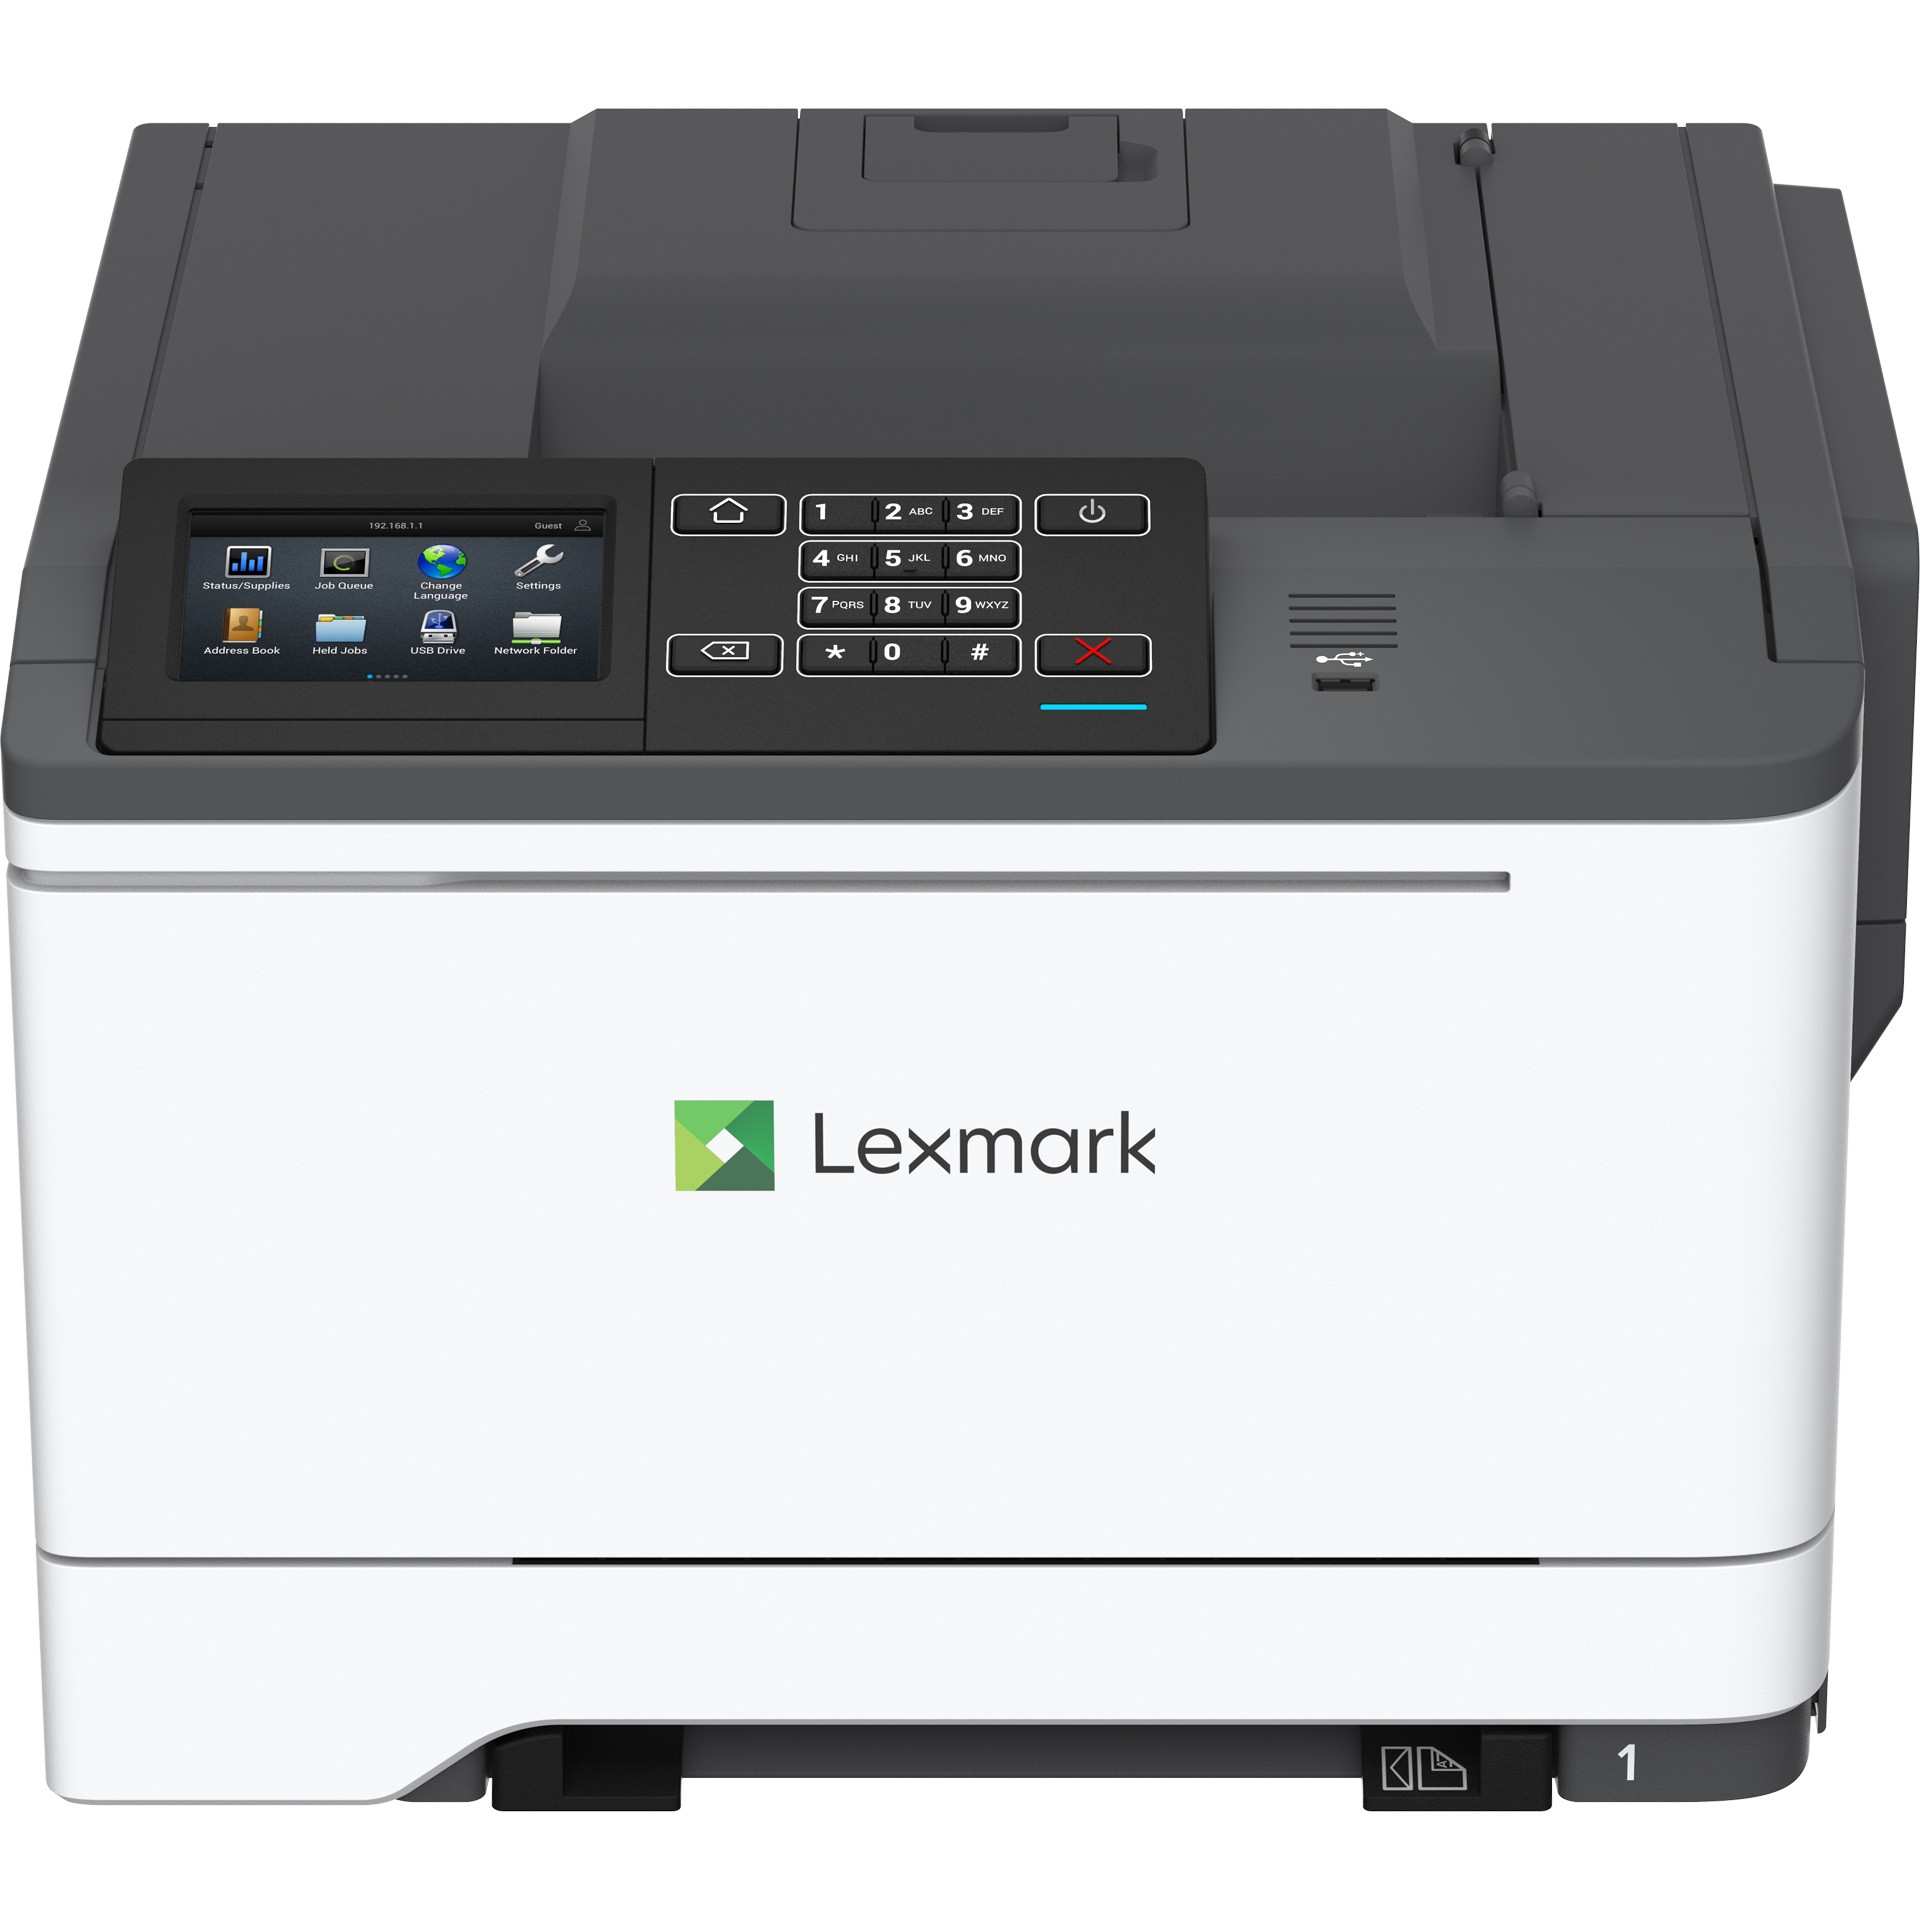 Impressora Laser Colorida Lexmark CS622de- Duplex, Rede, Alta Produção